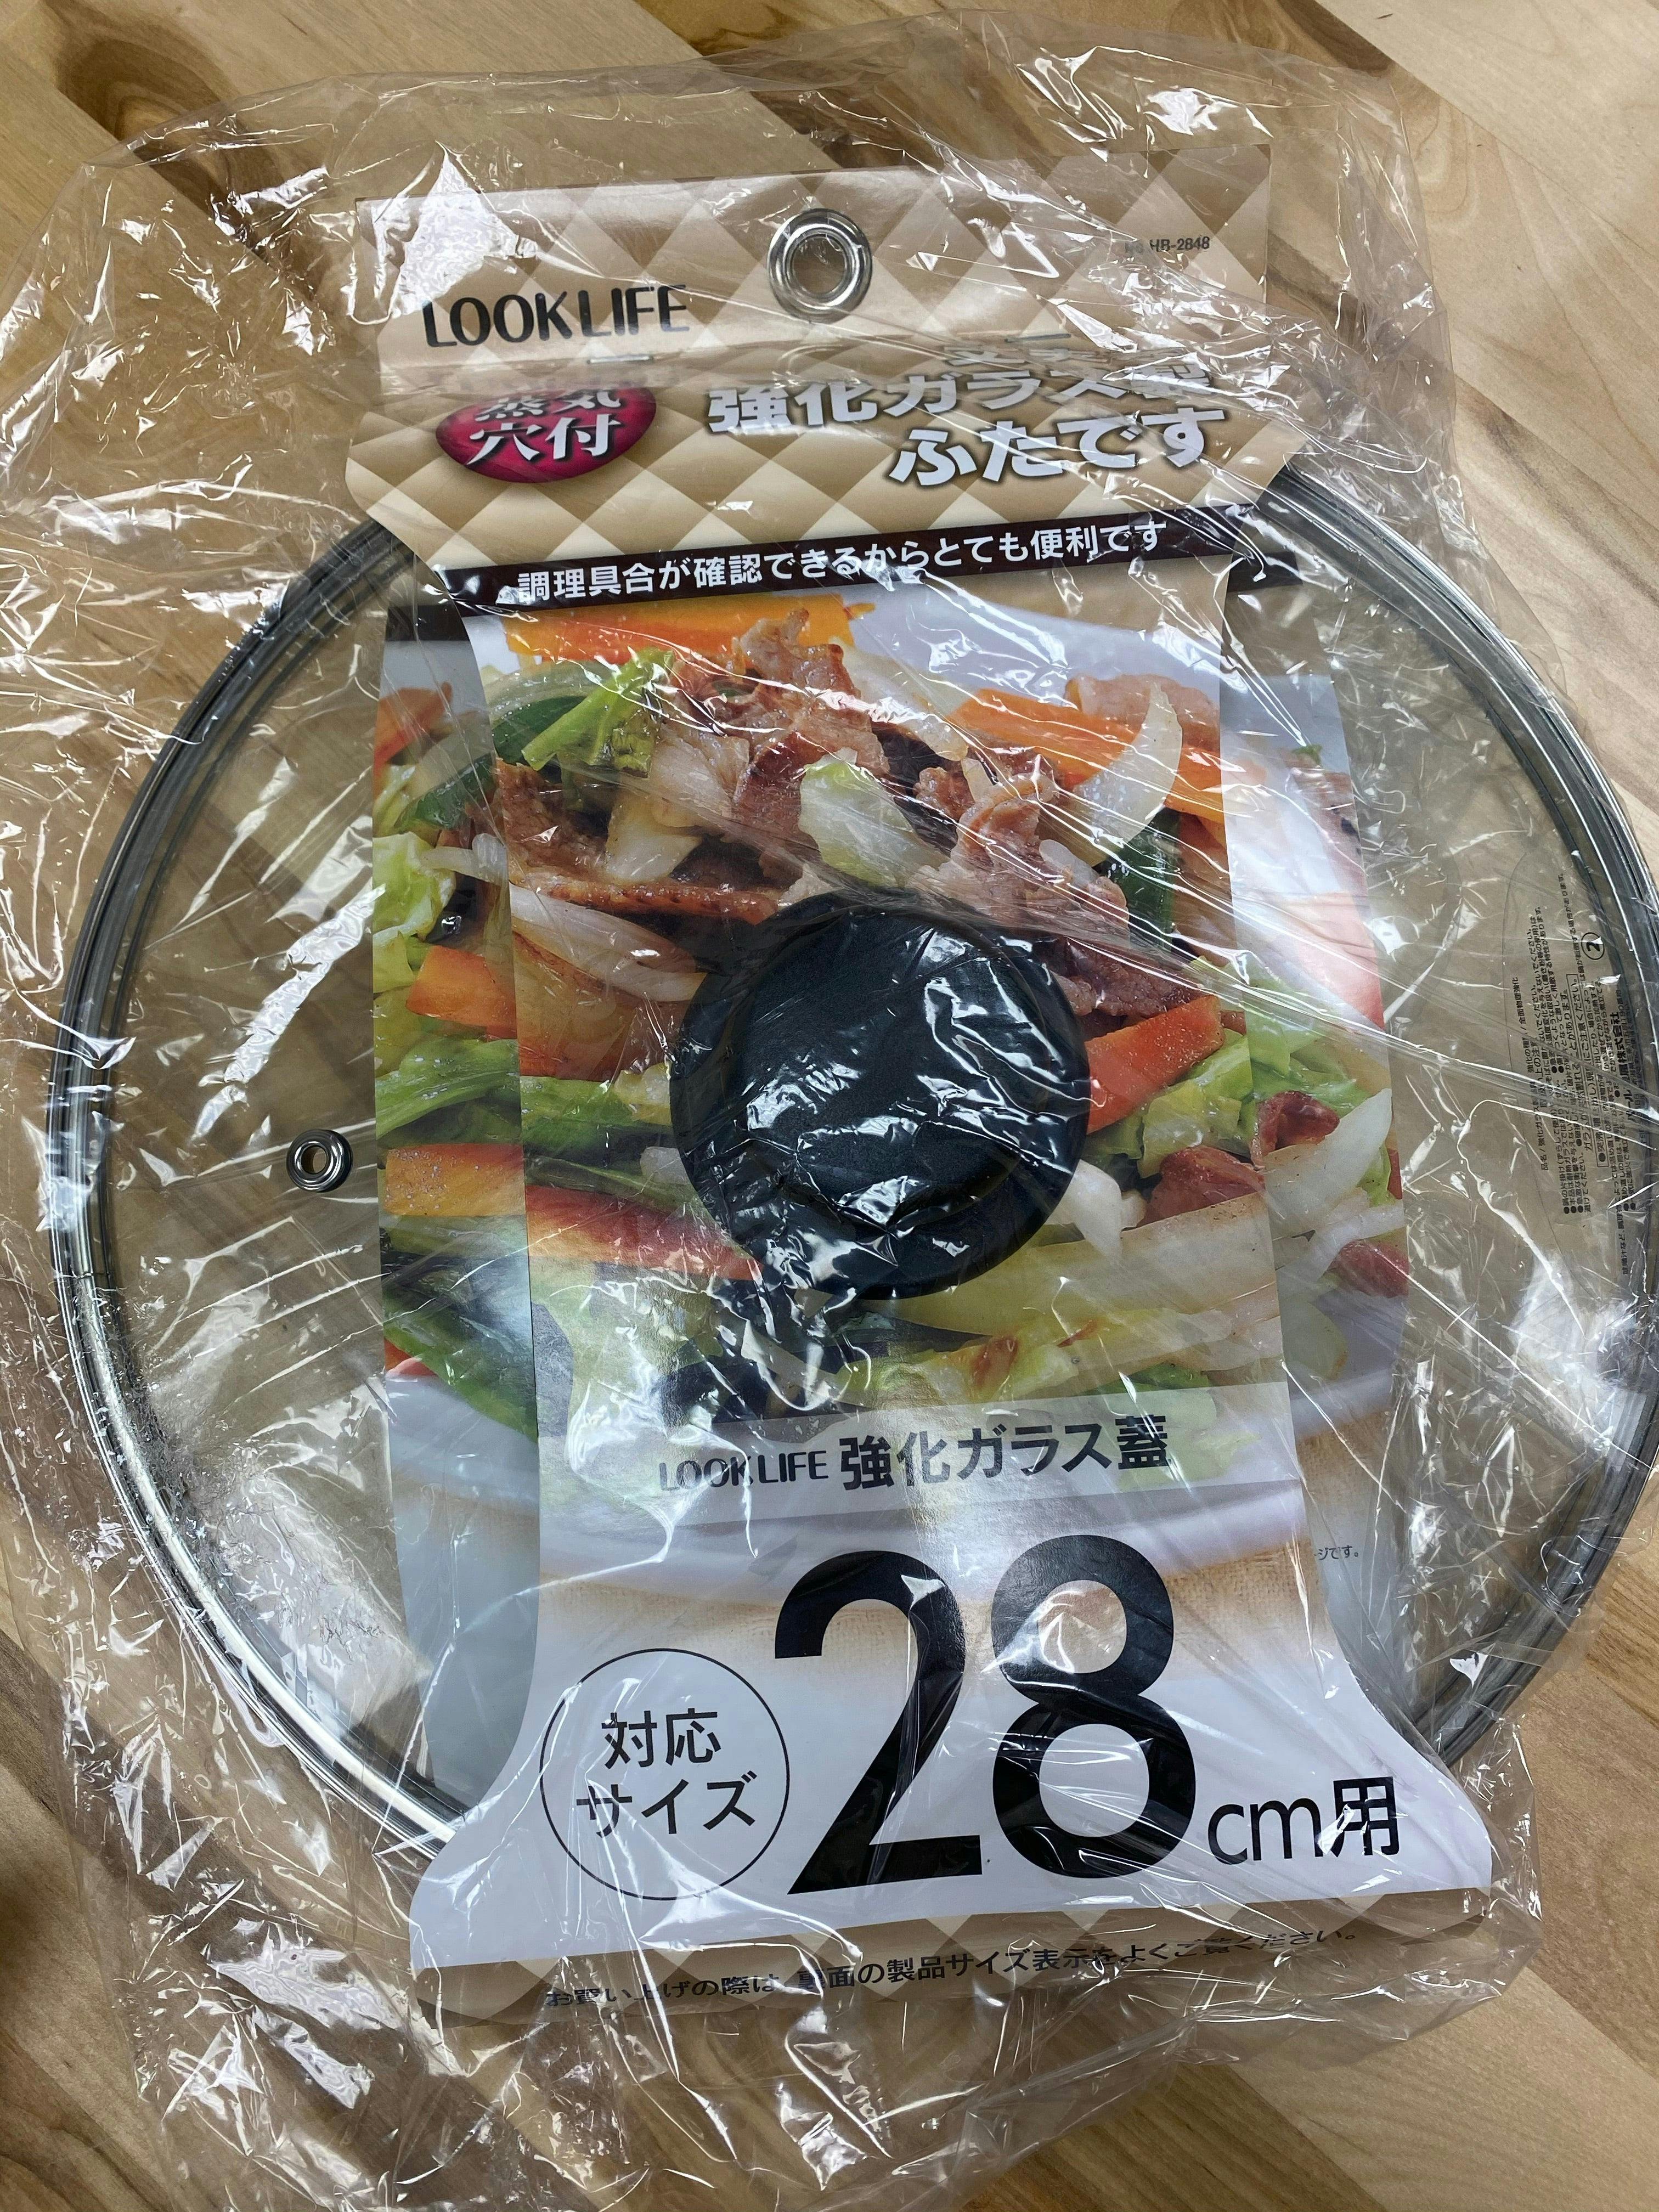 28cm 炒锅 锅盖